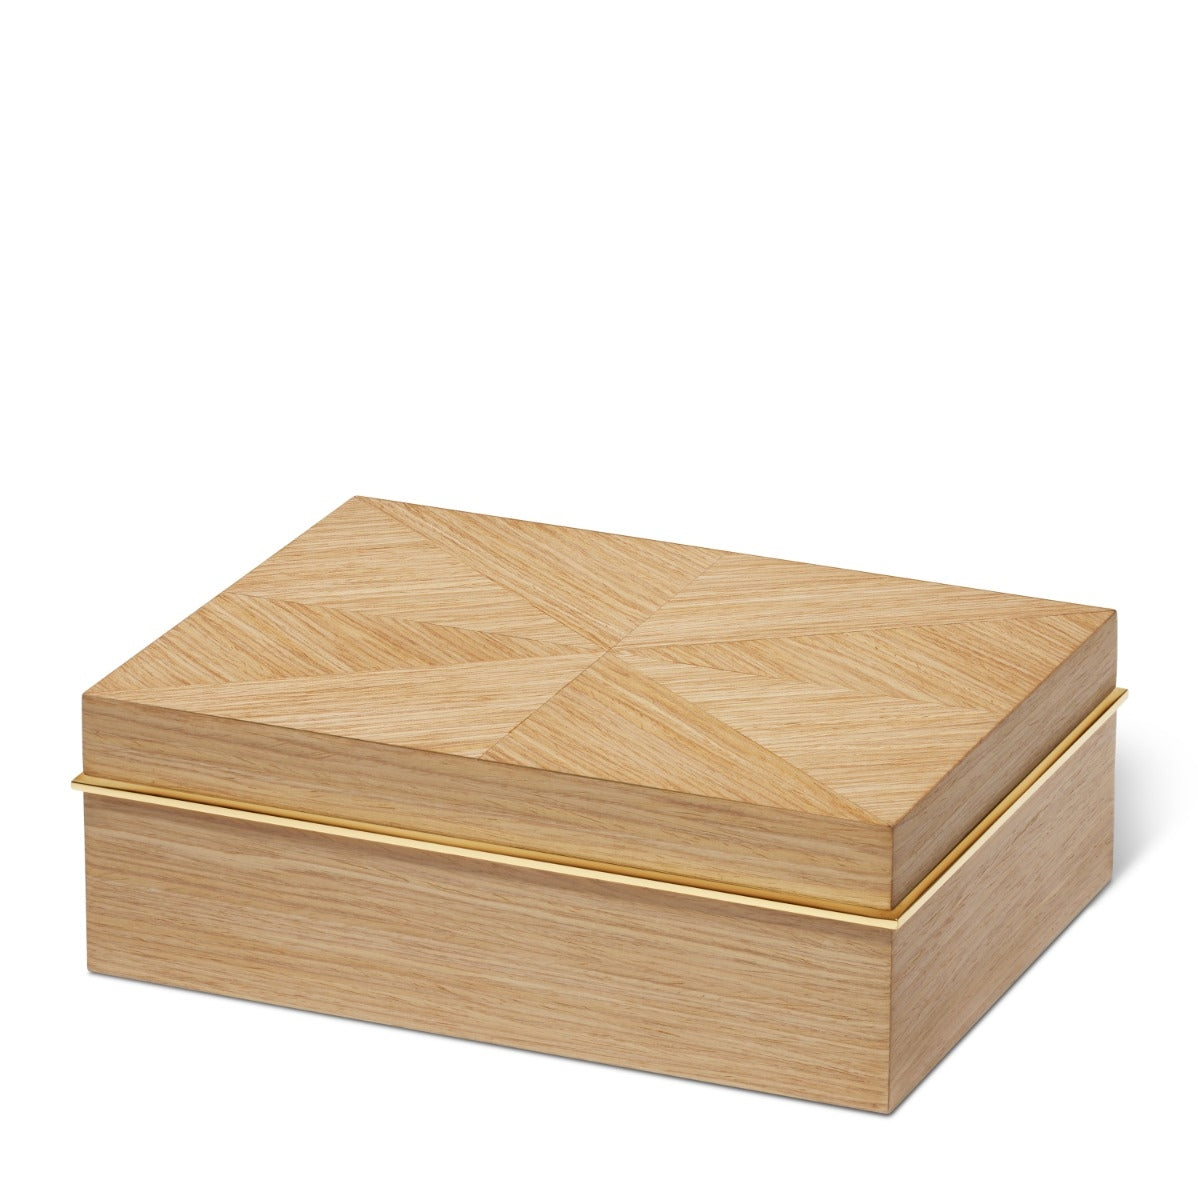 Aerin Marcello Large Oak Box